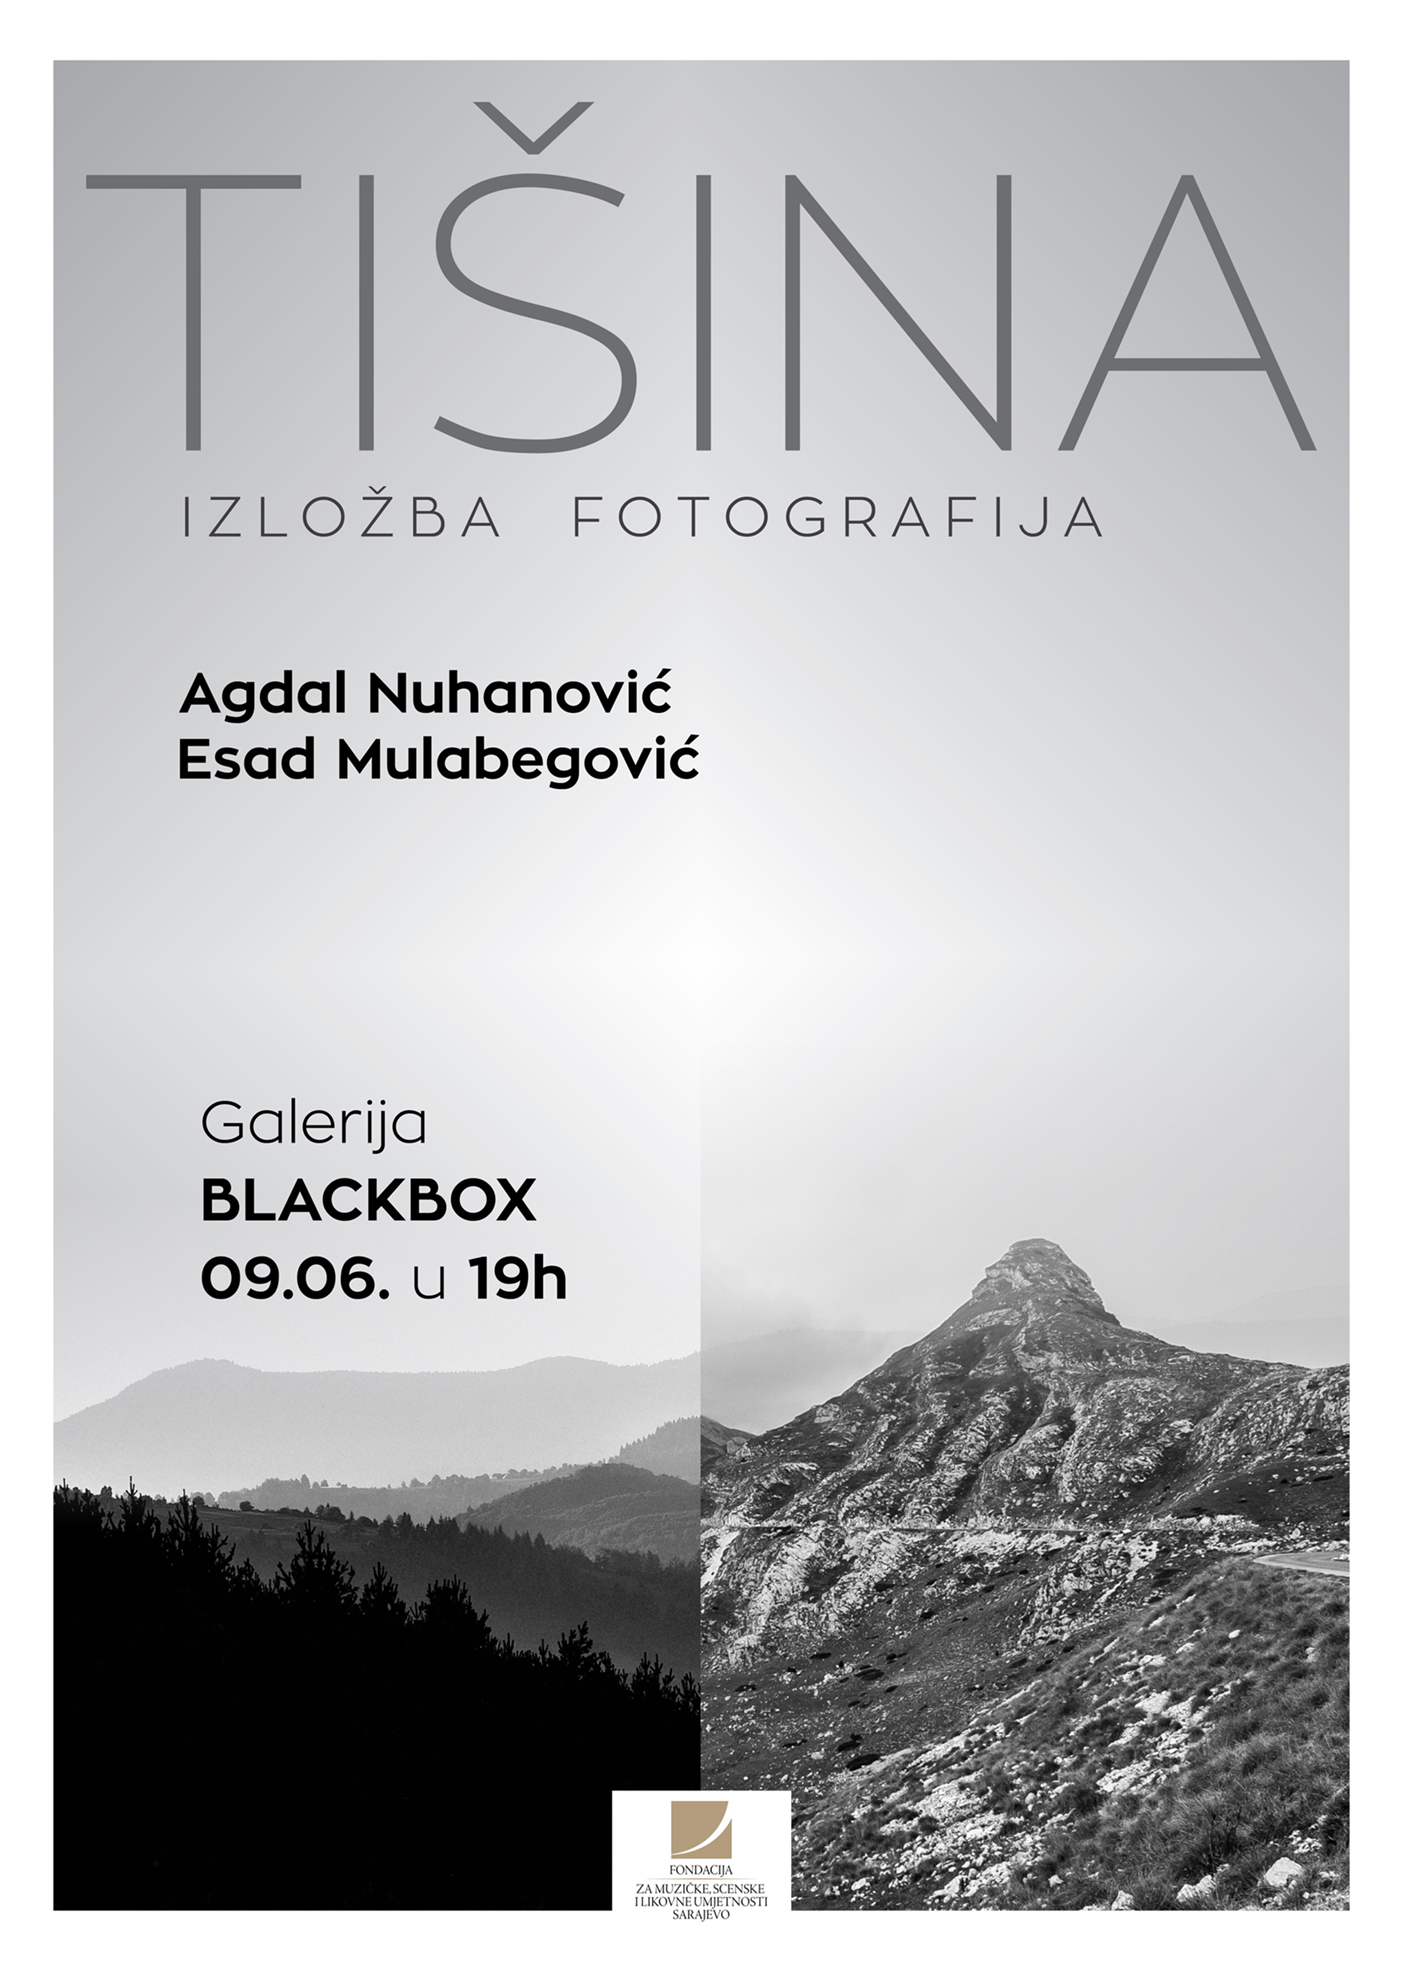 Izložba fotografija Agdala Nuhanovića i Esada Mulabegovića ‐ “Tišina”